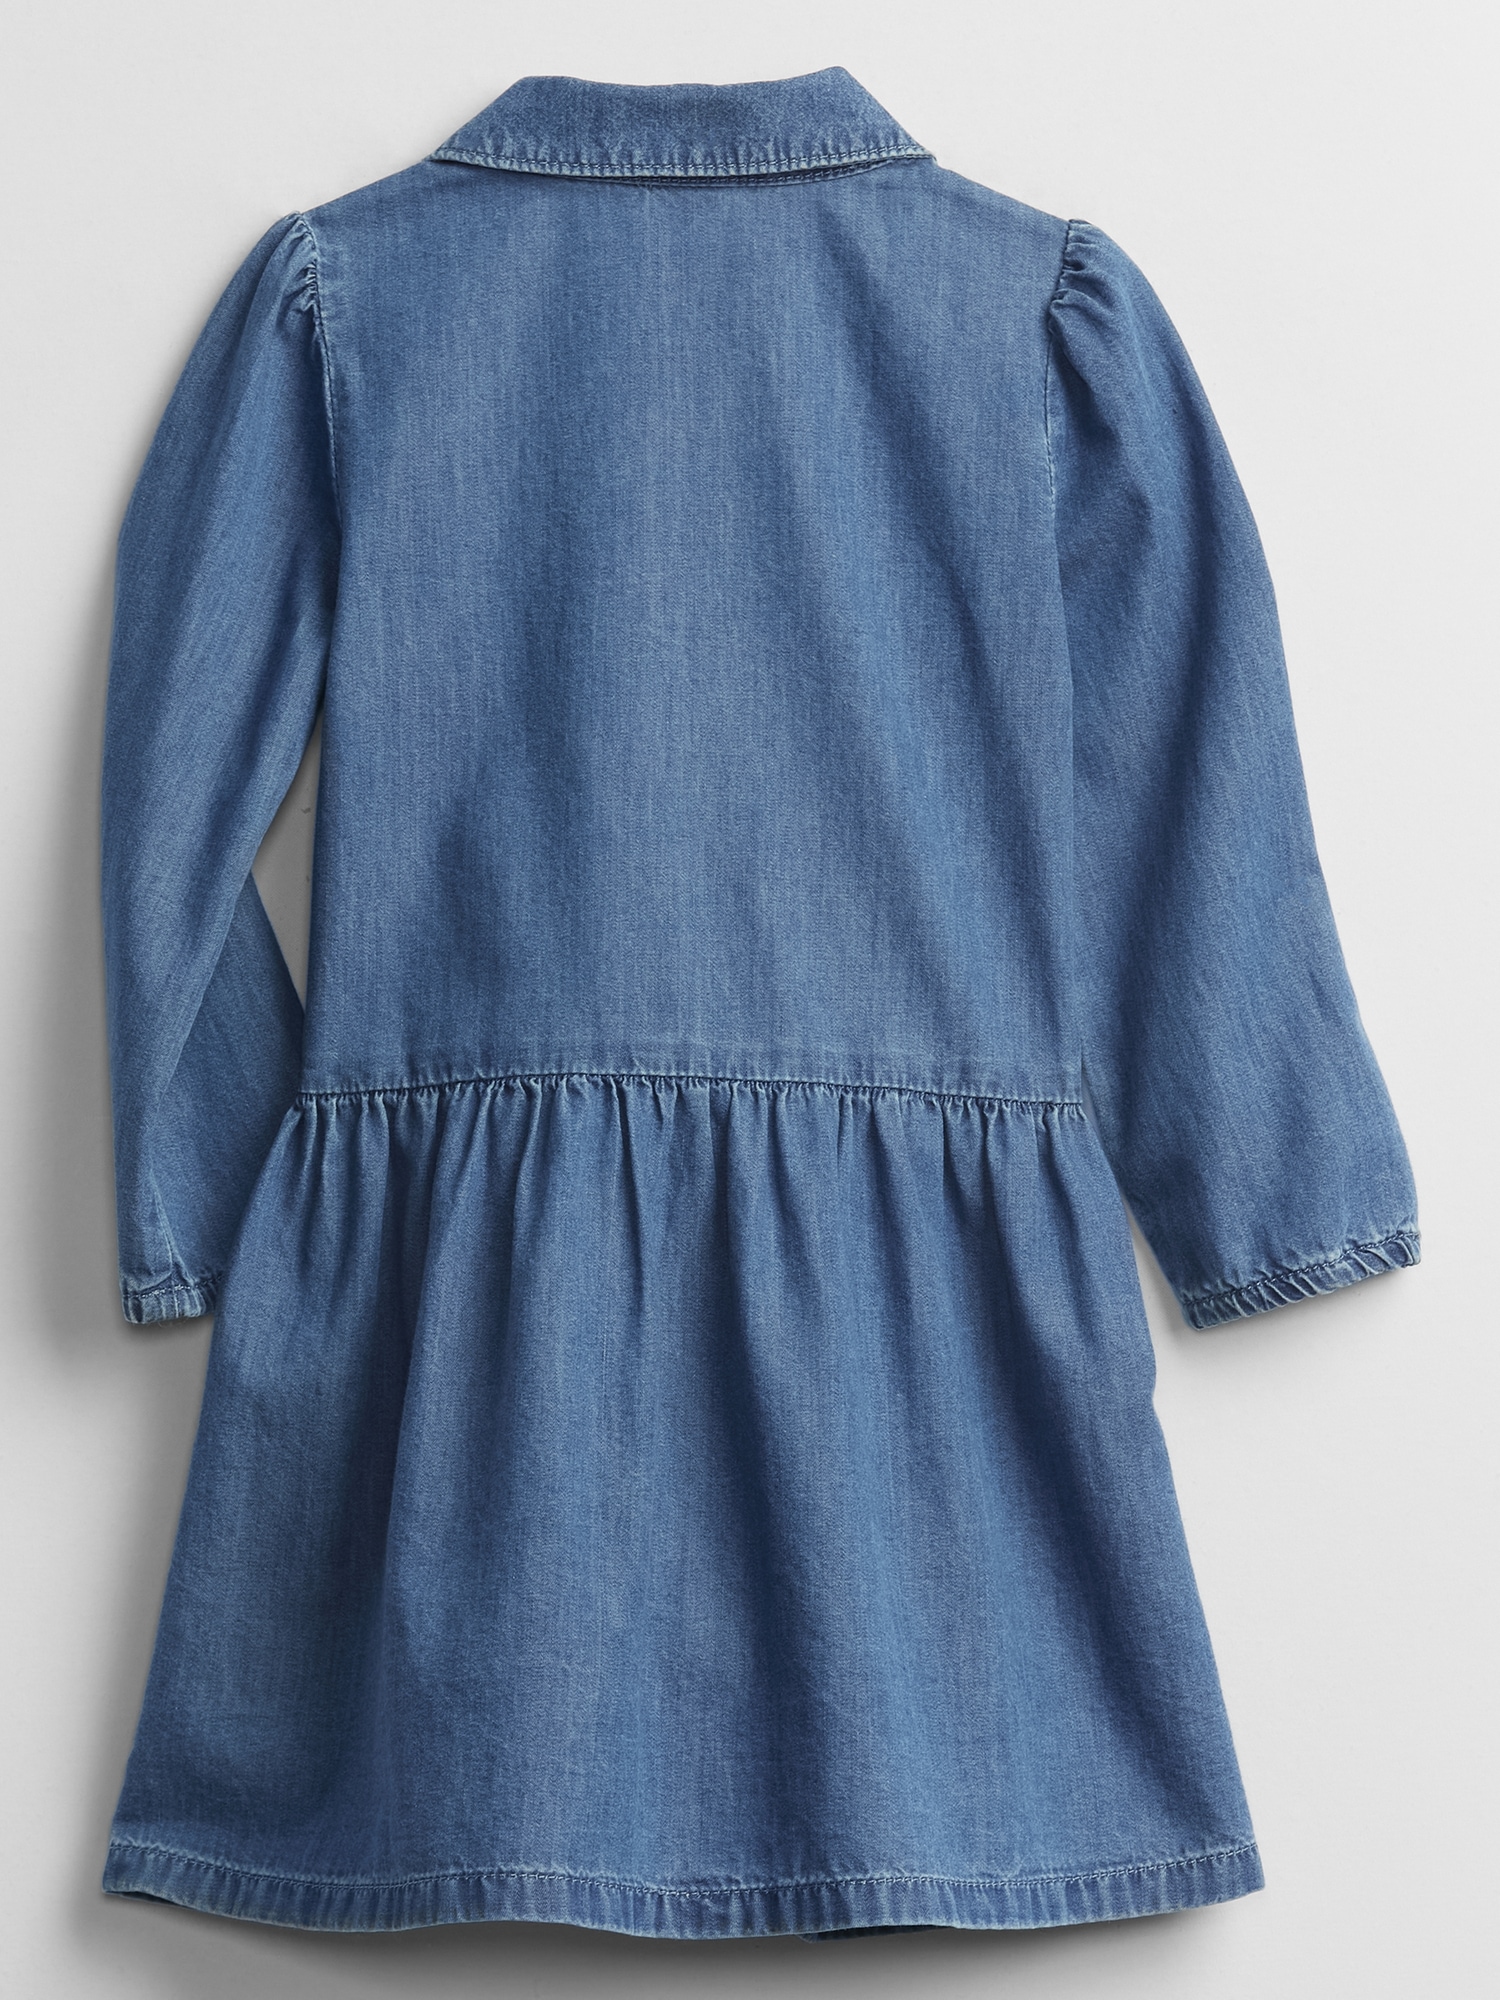 Toddler Denim Shirtdress | Gap Factory